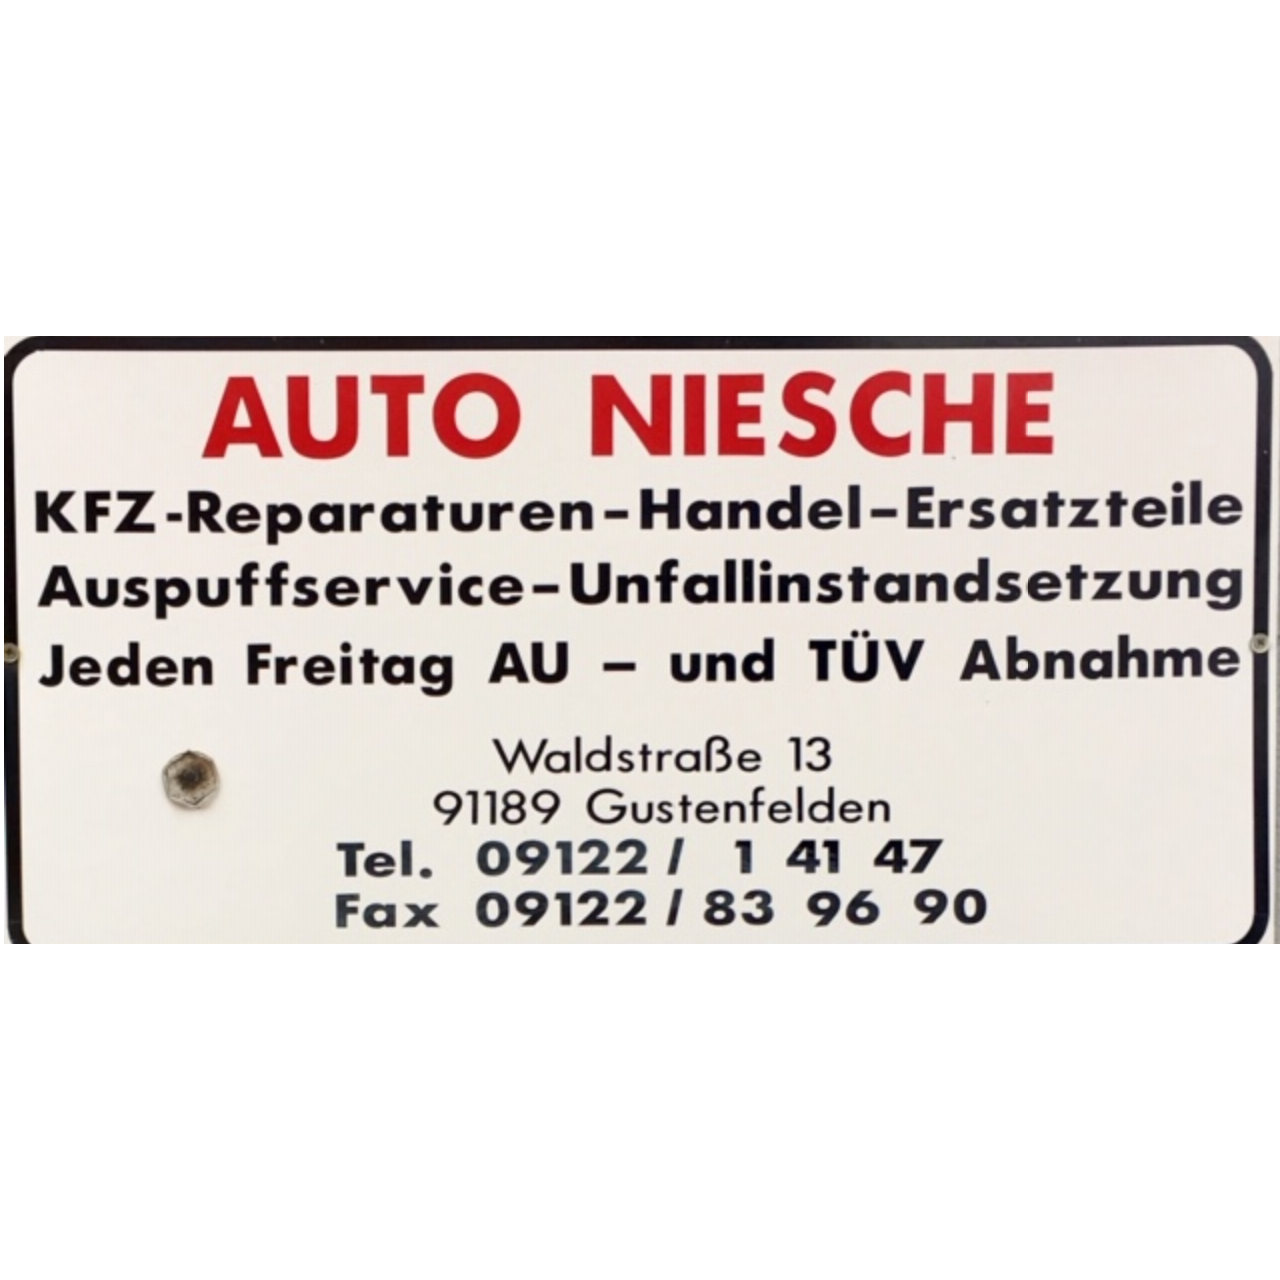 Autowerkstatt Hans-Jochen Niesche in Rohr in Mittelfranken - Logo